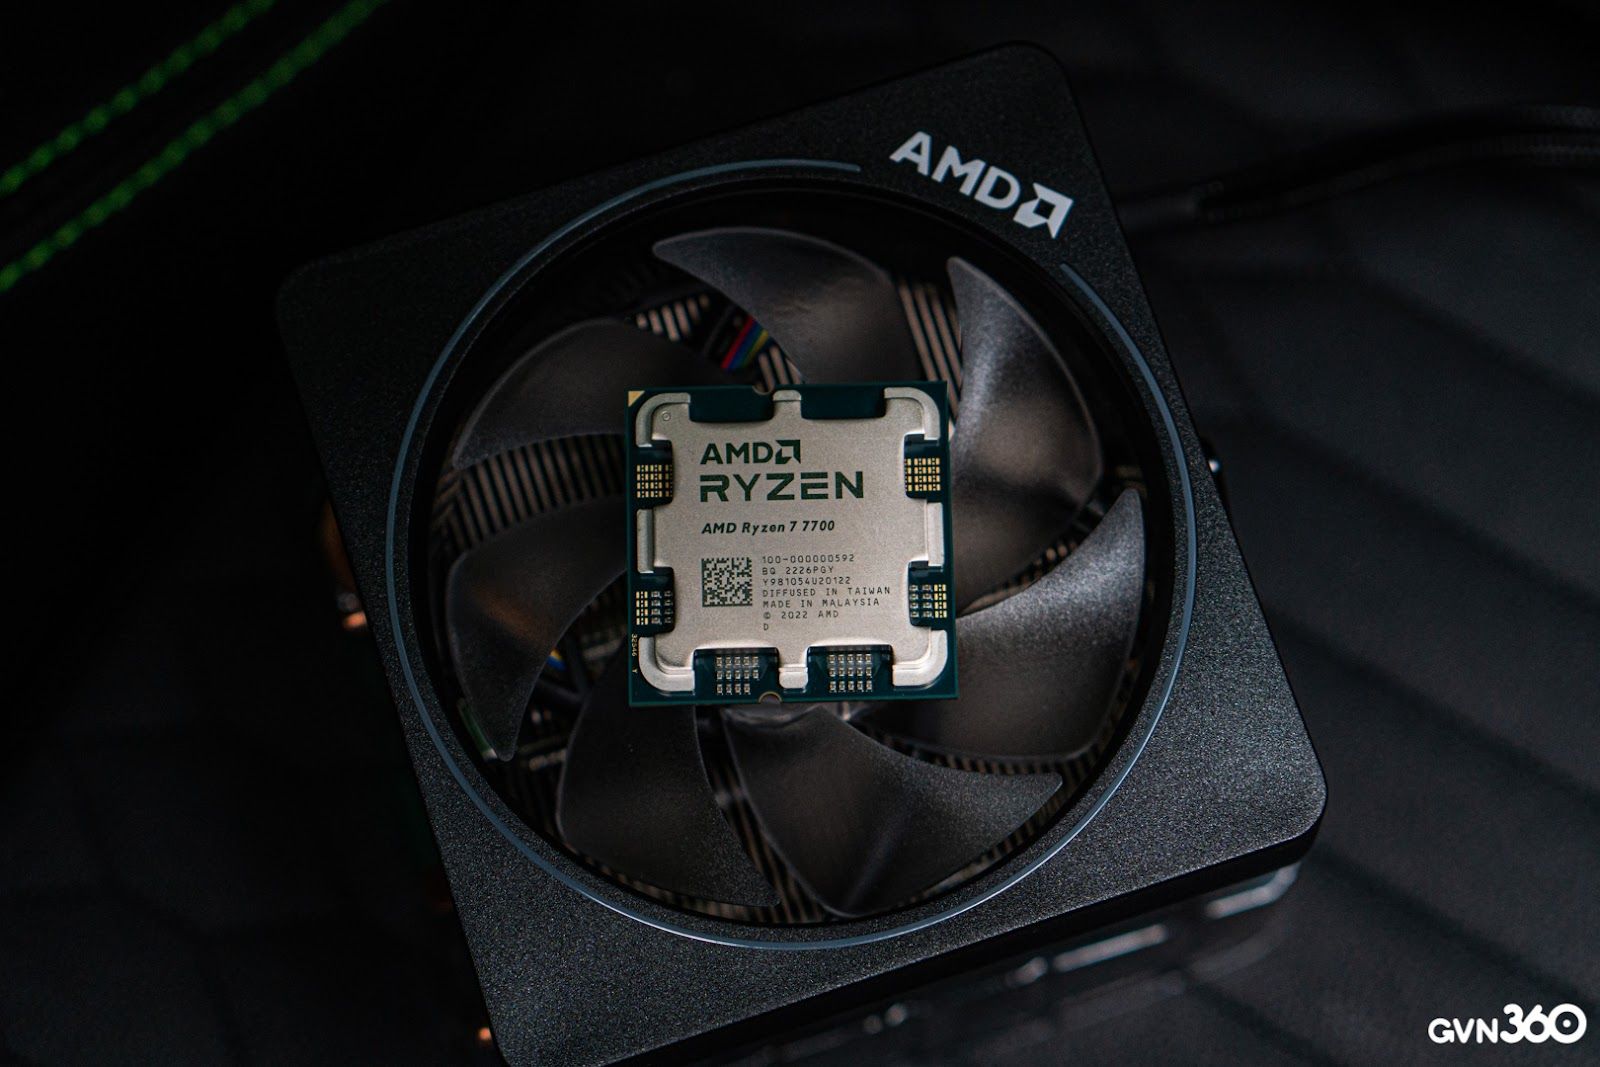 Mua AMD Ryzen 7 7700 8 nhân 16 luồng được luôn tản cao cấp Wraith Prism RGB với giá chưa đến 9 triệu đồng